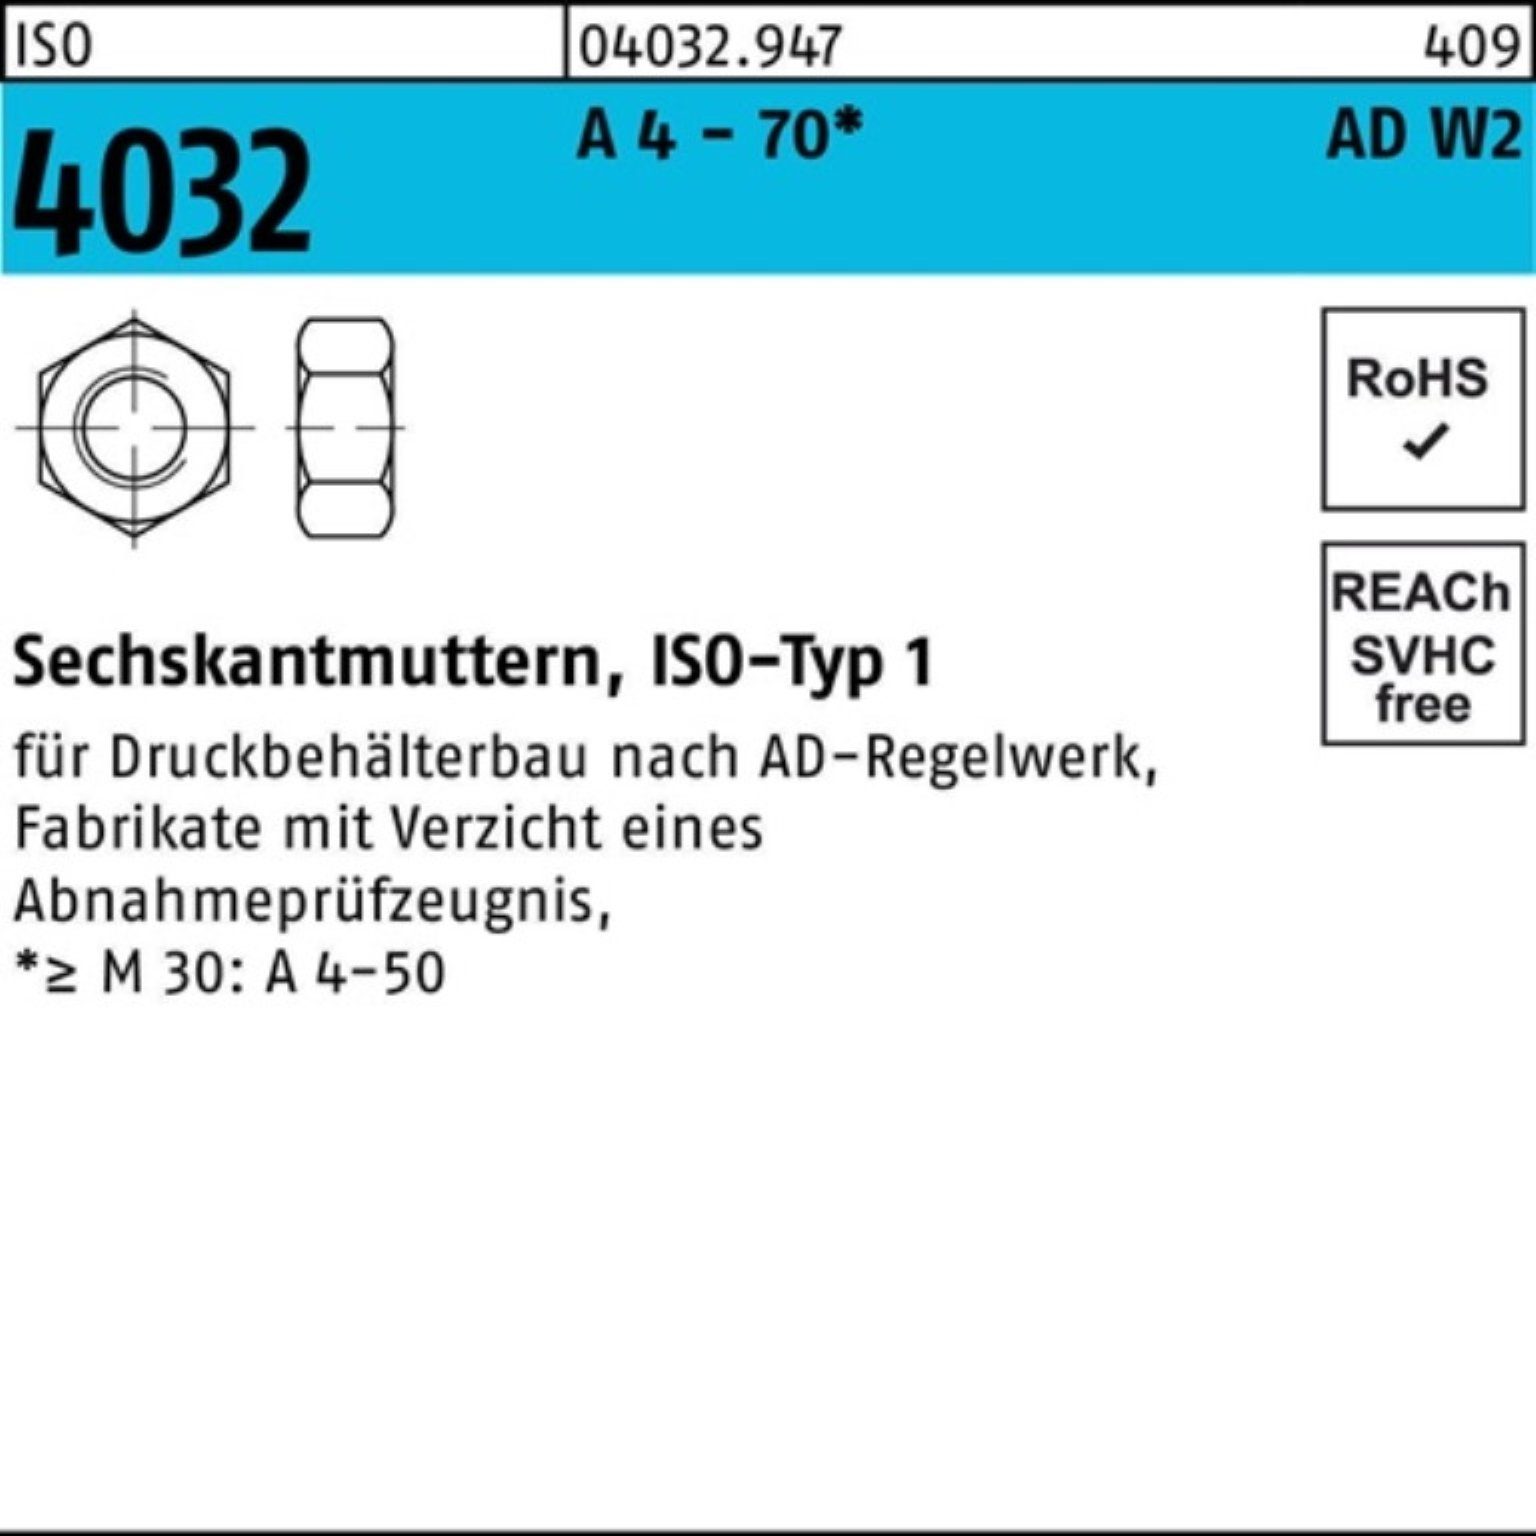 100er M30 40 70 A 4032 Stück AD-W2 Bufab - 4 Pack 1 Sechskantmutter Muttern ISO ISO